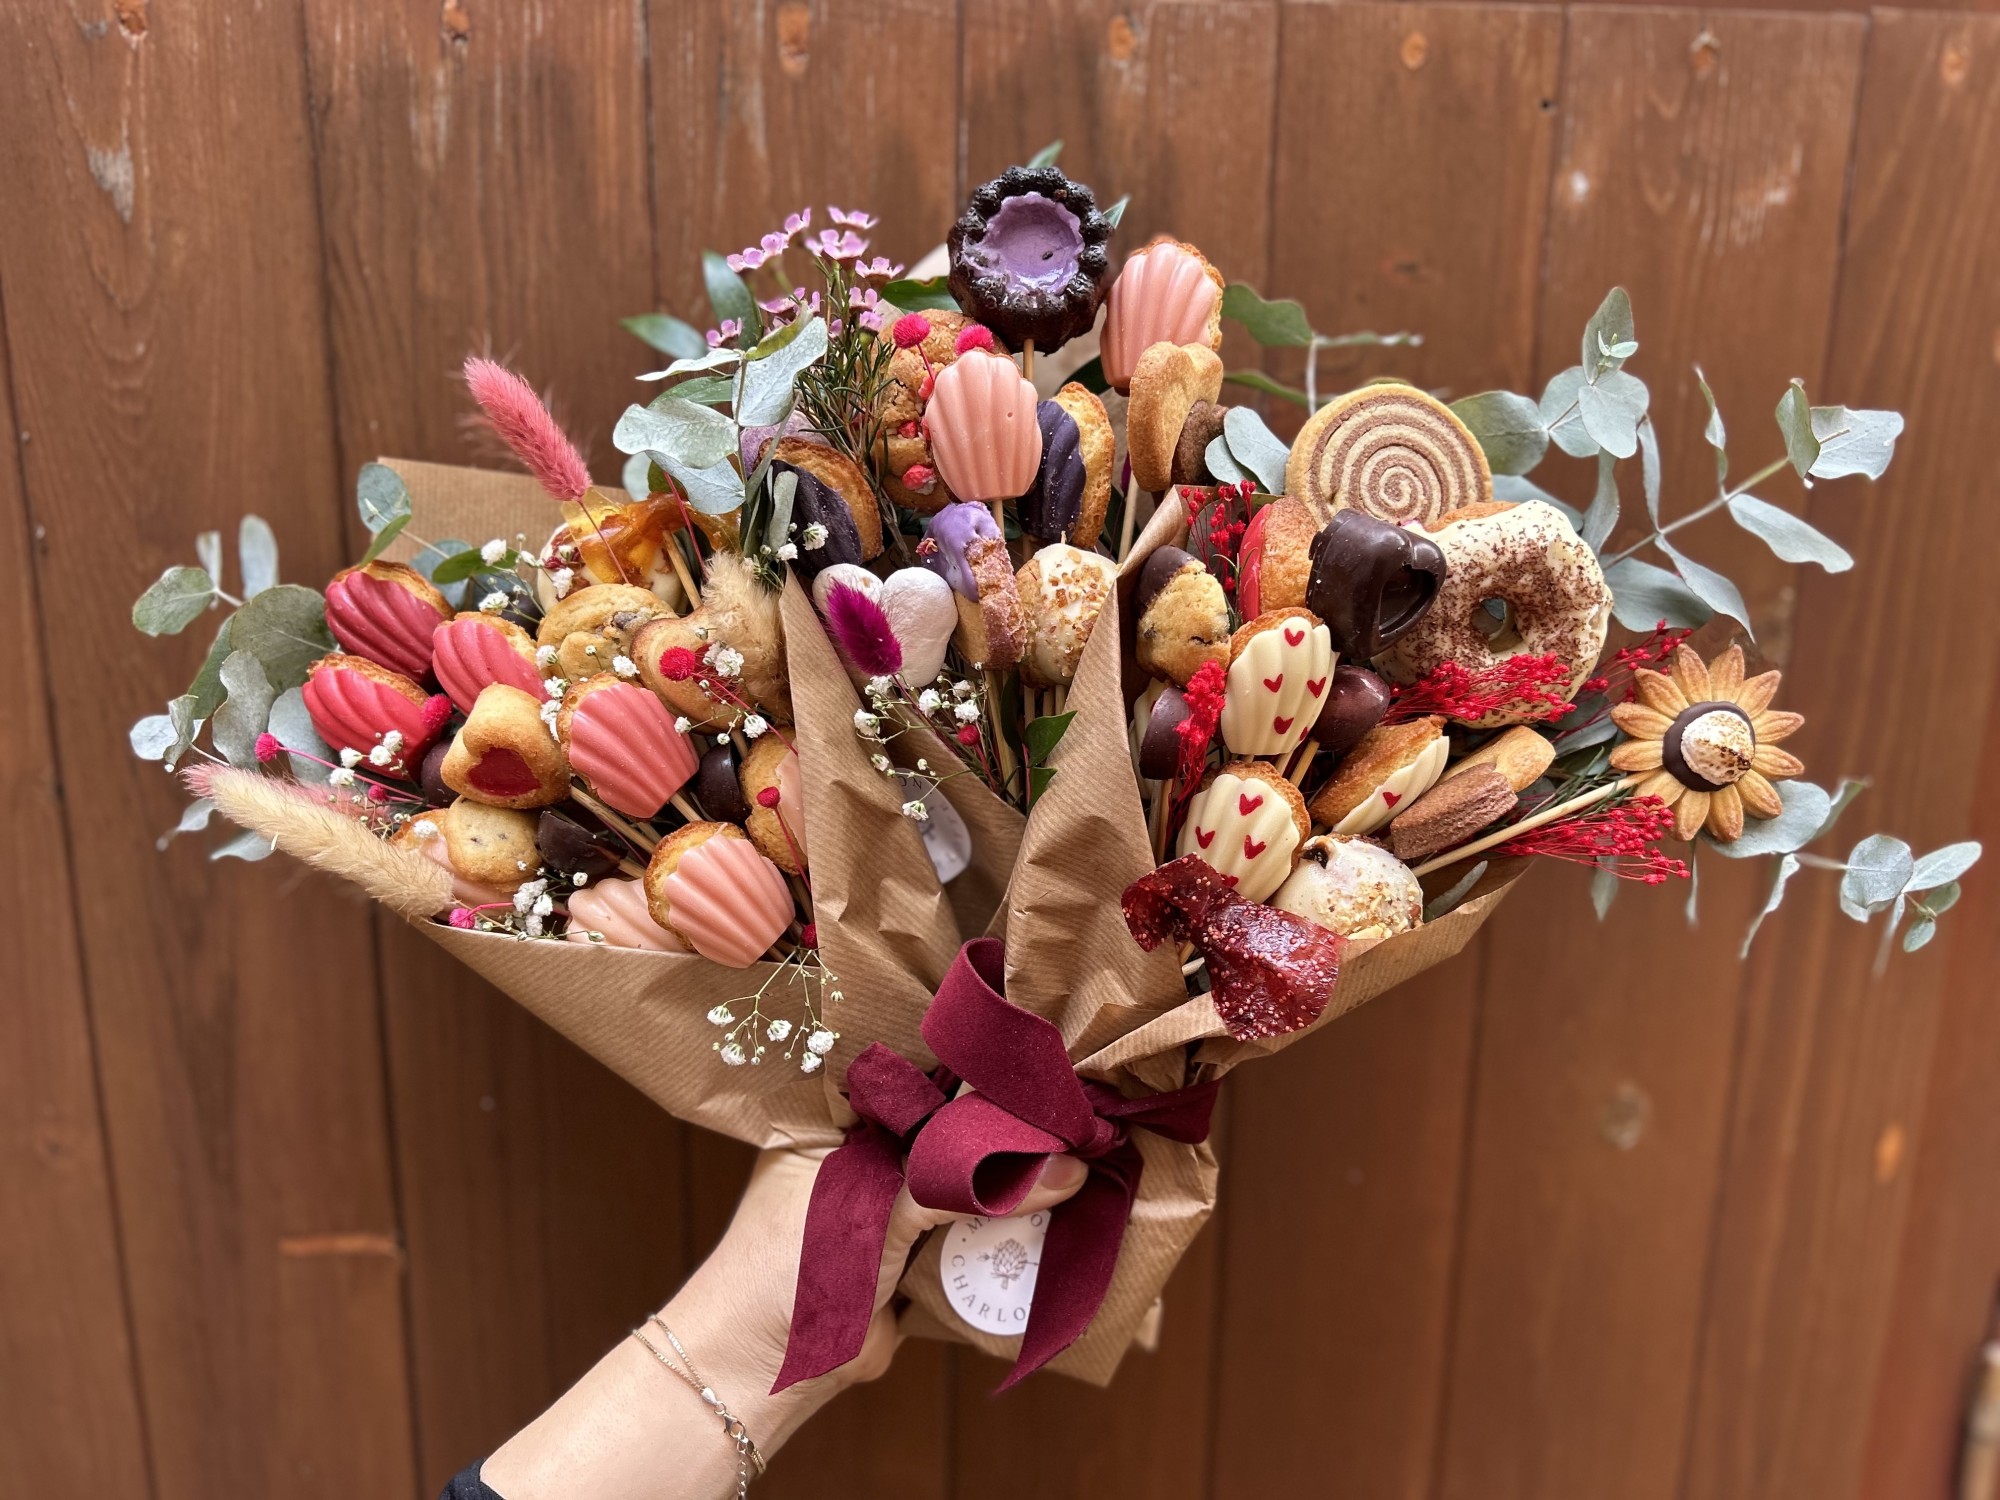 Toulouse - Idée cadeaux/Saint Valentin : Les bouquets à croquer de Maison Charlotte attendent les amoureux !